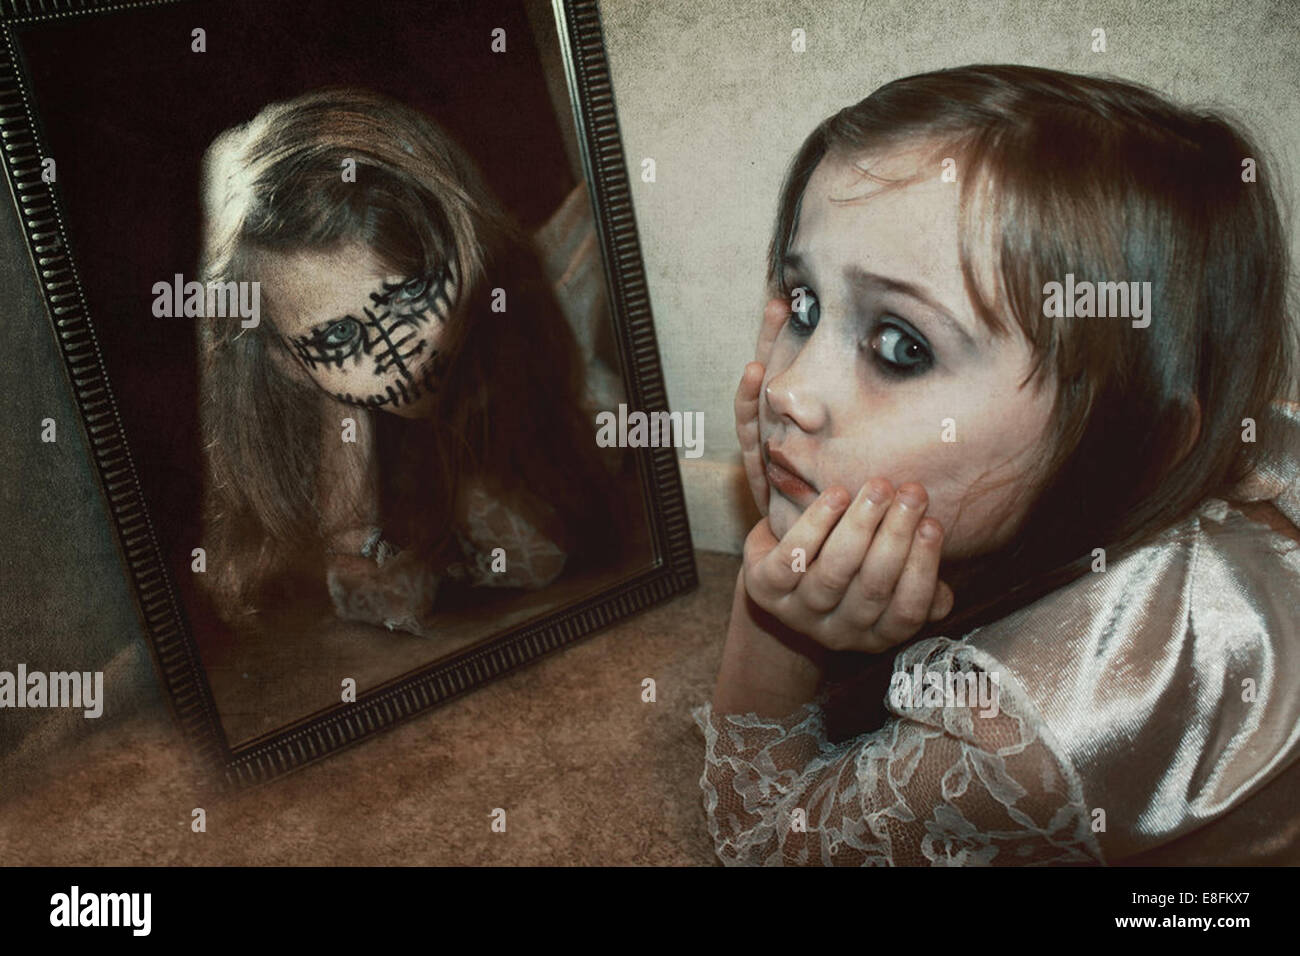 Mädchen auf dem Boden liegend mit einer Reflexion ihres Alter Ego im Spiegel Stockfoto